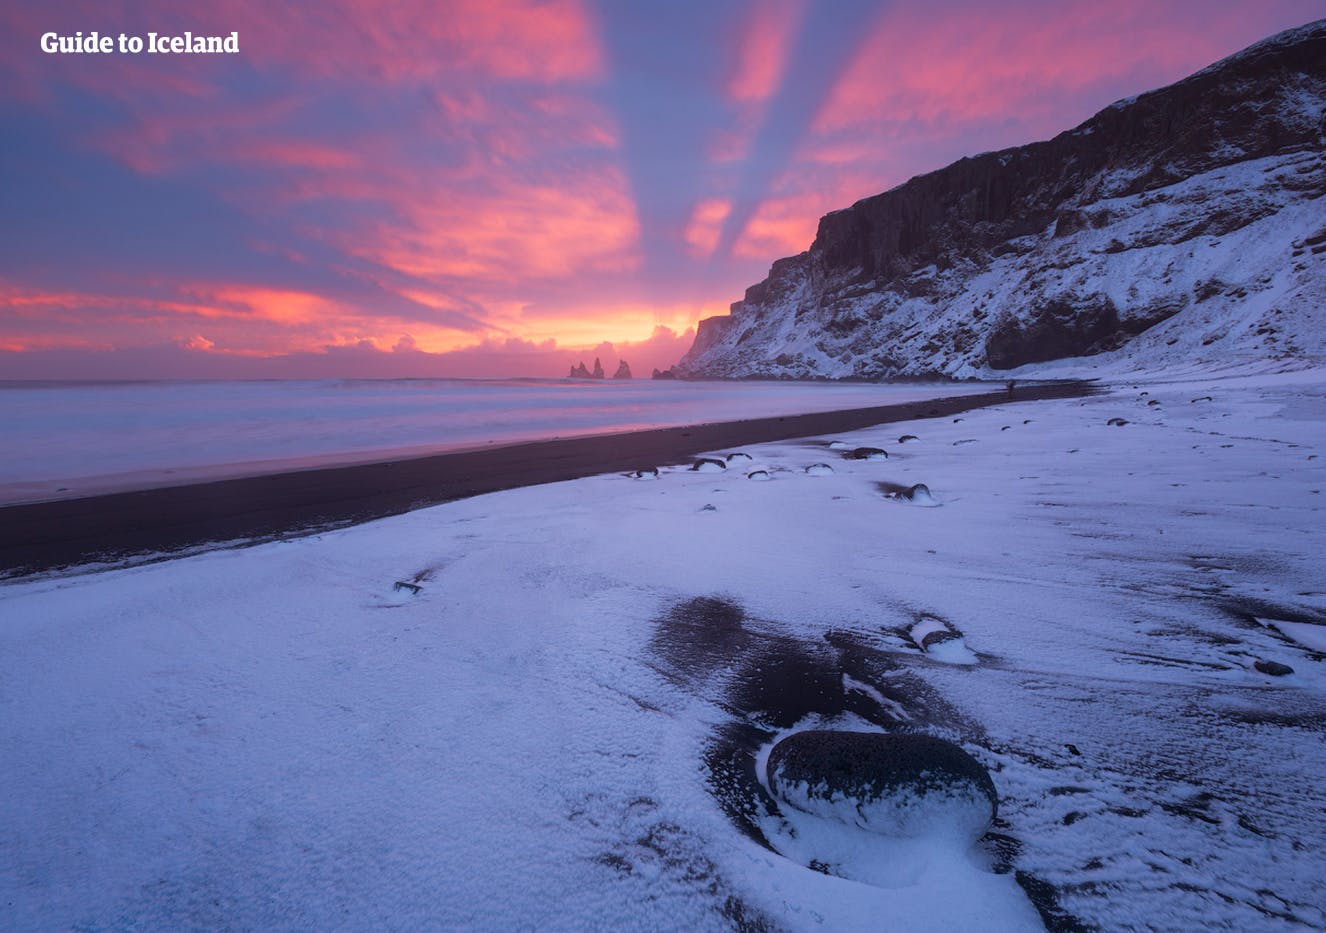 한 겨울, 남부 해안을 드라이브해 보는 건 어떤가요? 백야의 지지 않는 태양이 선사하는 아이슬란드의 아름다움을 만끽합니다.